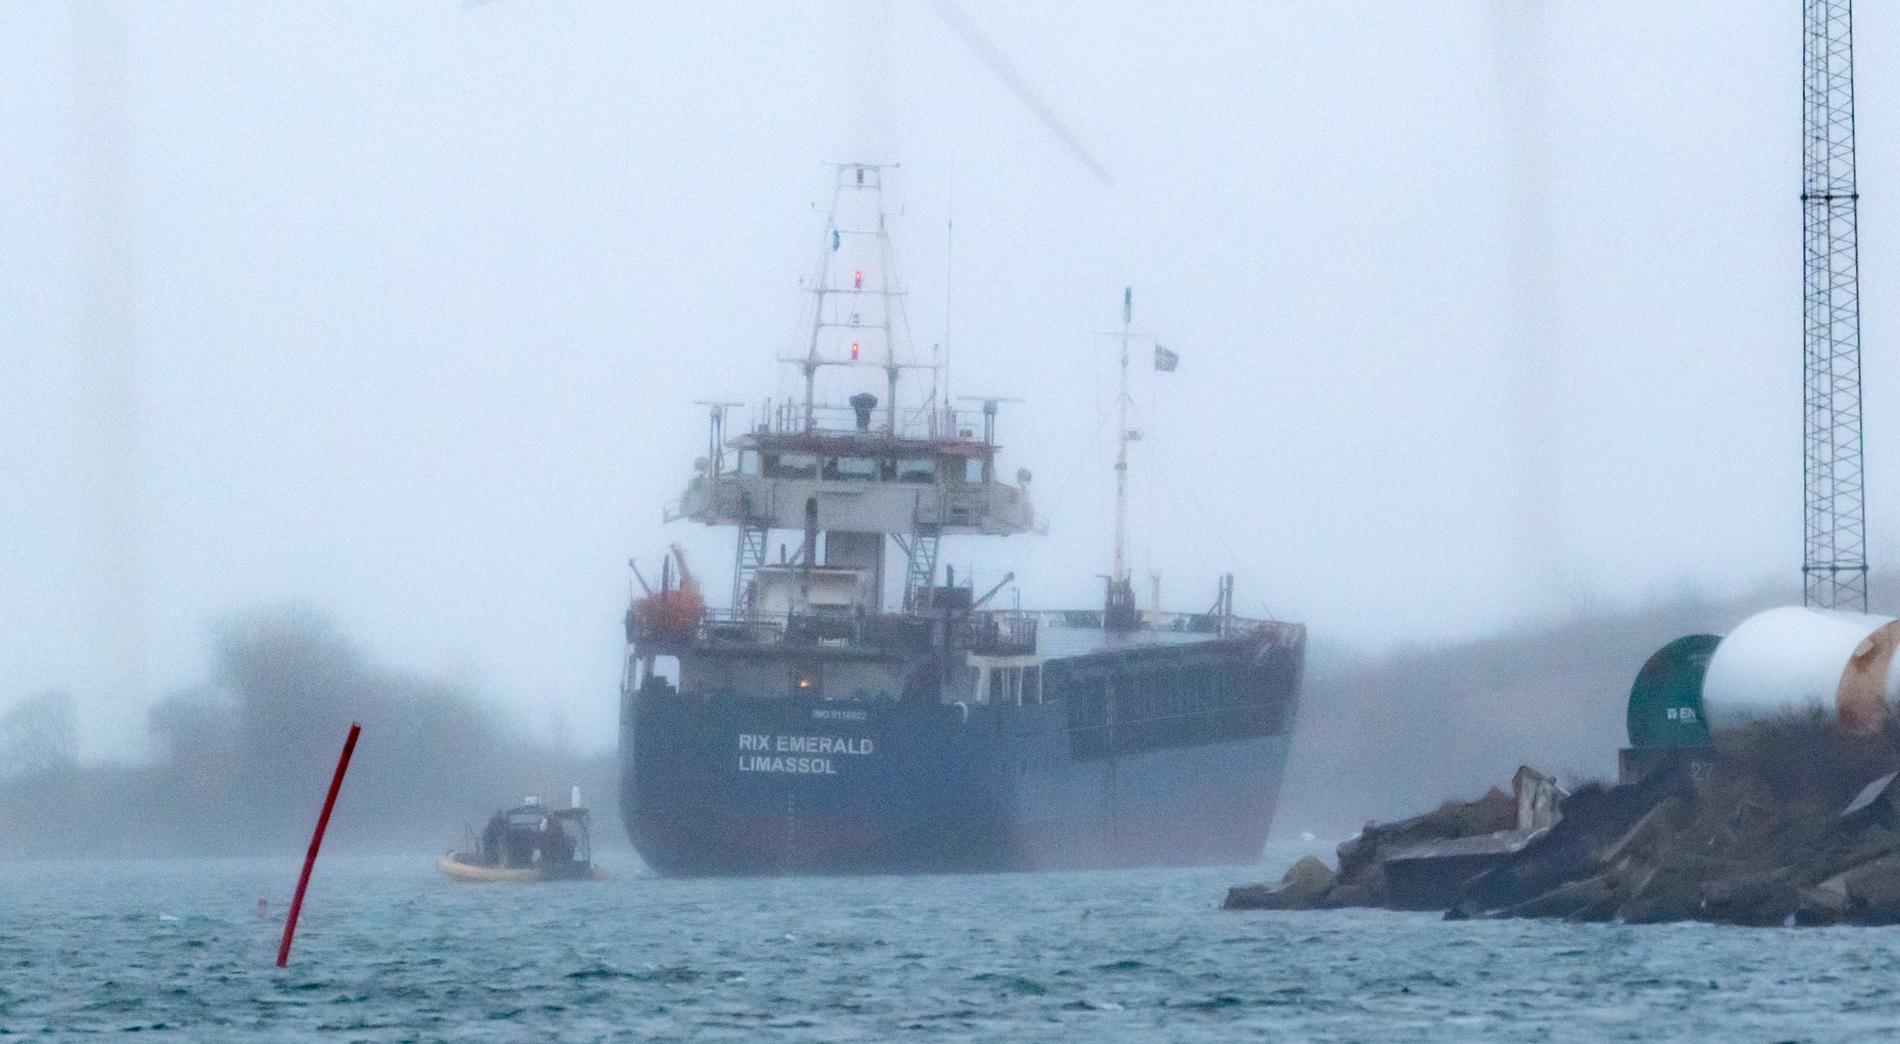 Kustbevakningen undersöker det 90 meter långa lastfartyget Rix Emerald som gått på grund i hamnen i Landskrona.